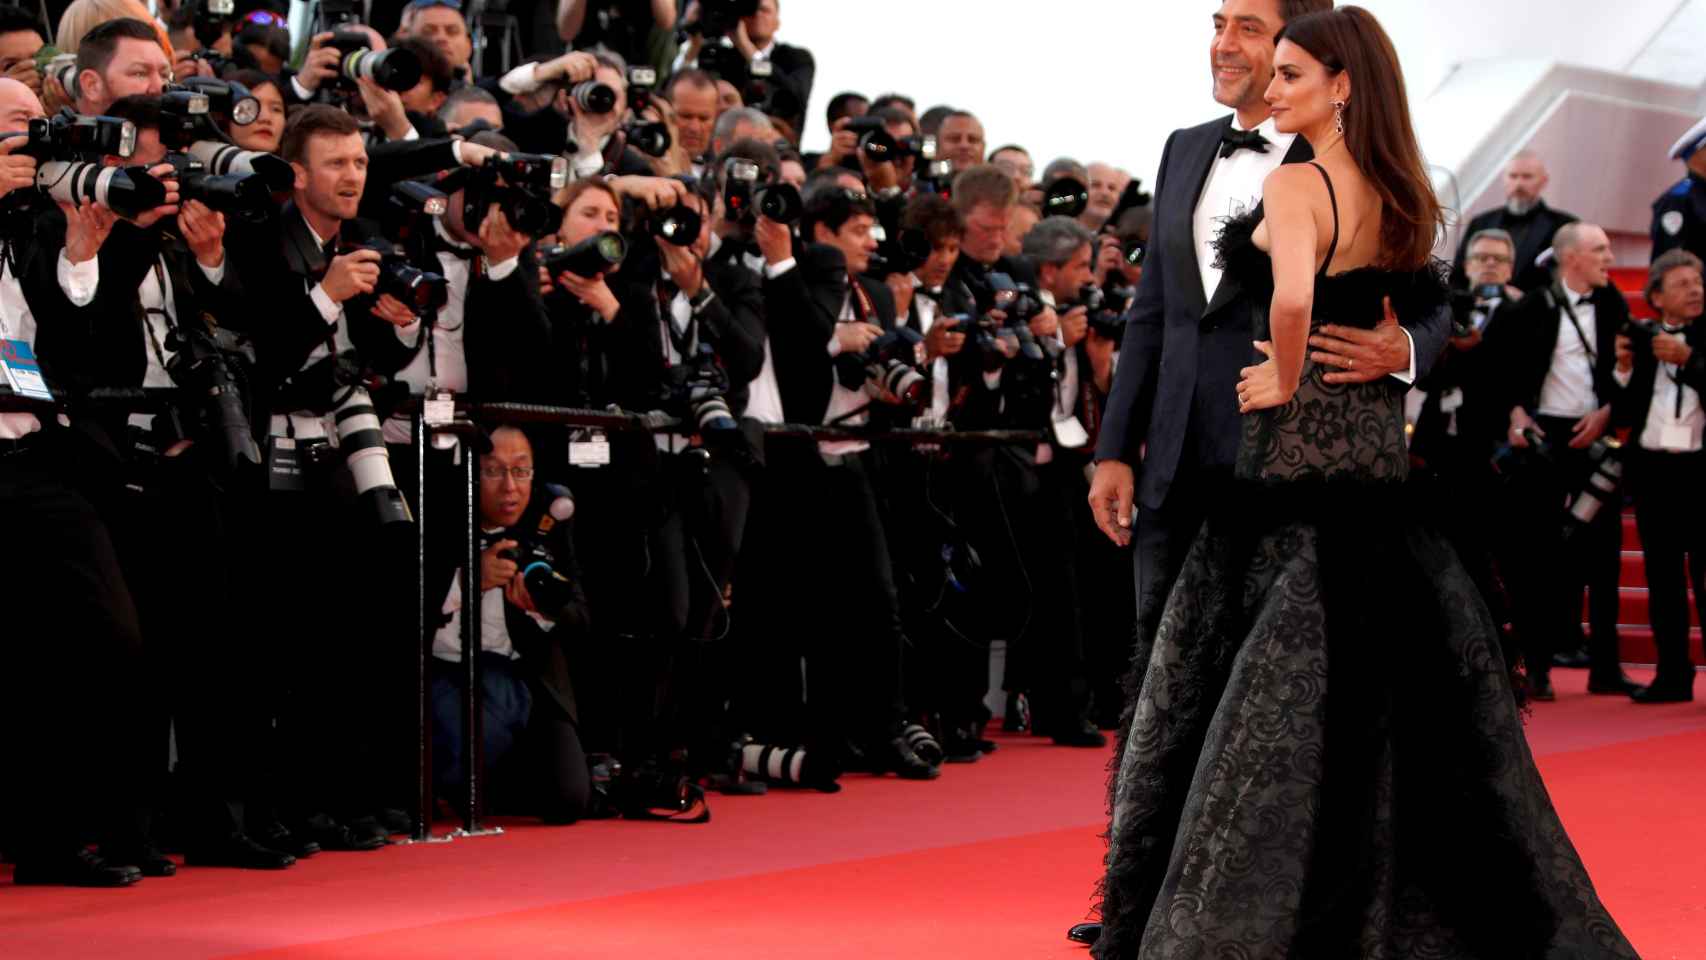 Derroche de belleza y glamour en la alfombra roja del Festival de Cannes